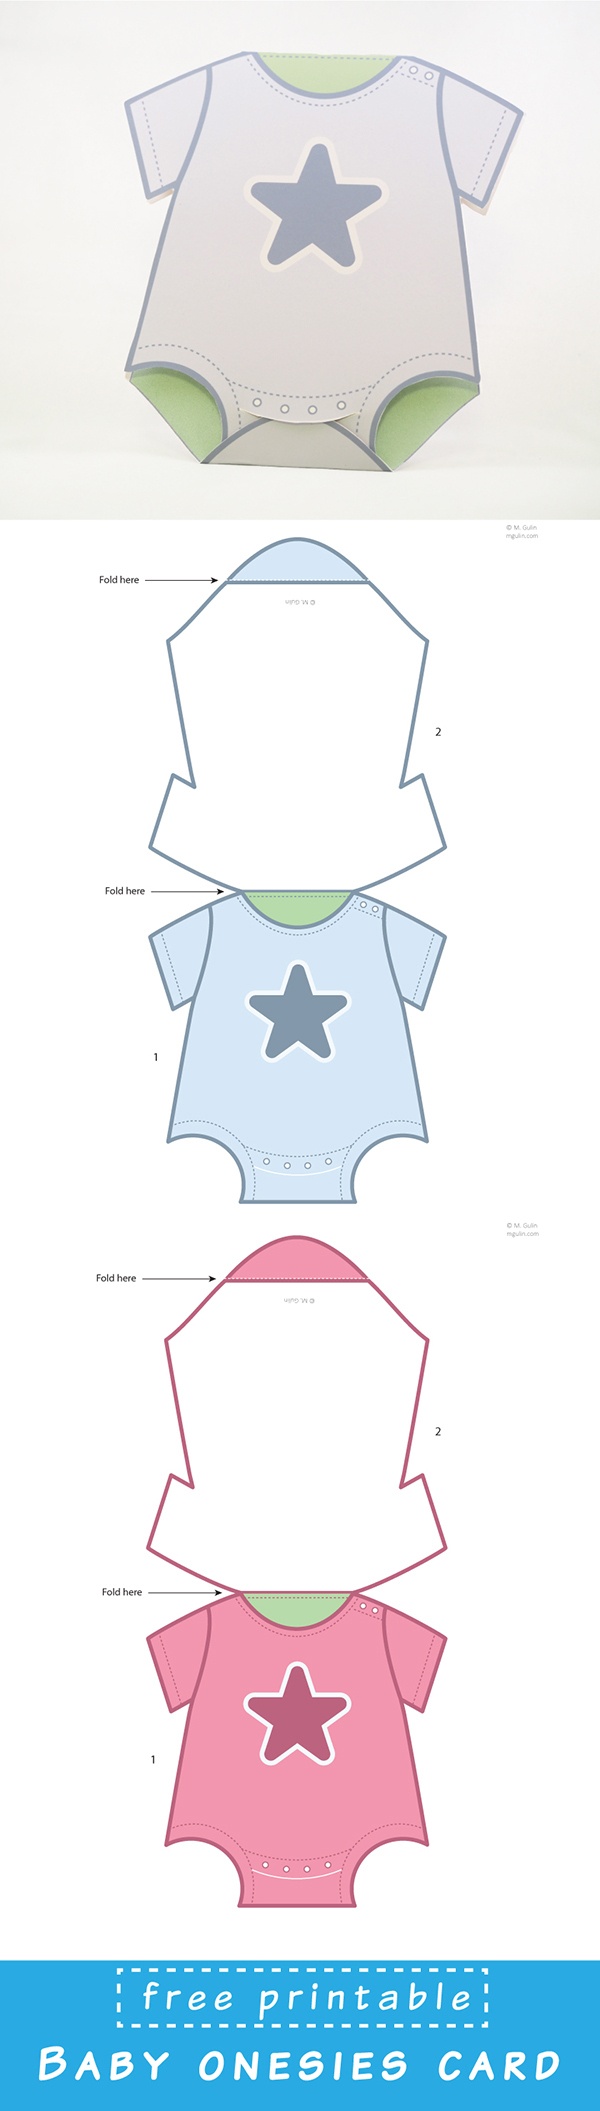 Baby Onesies Cards - M. Gulin - Free Printable Onesie Pattern